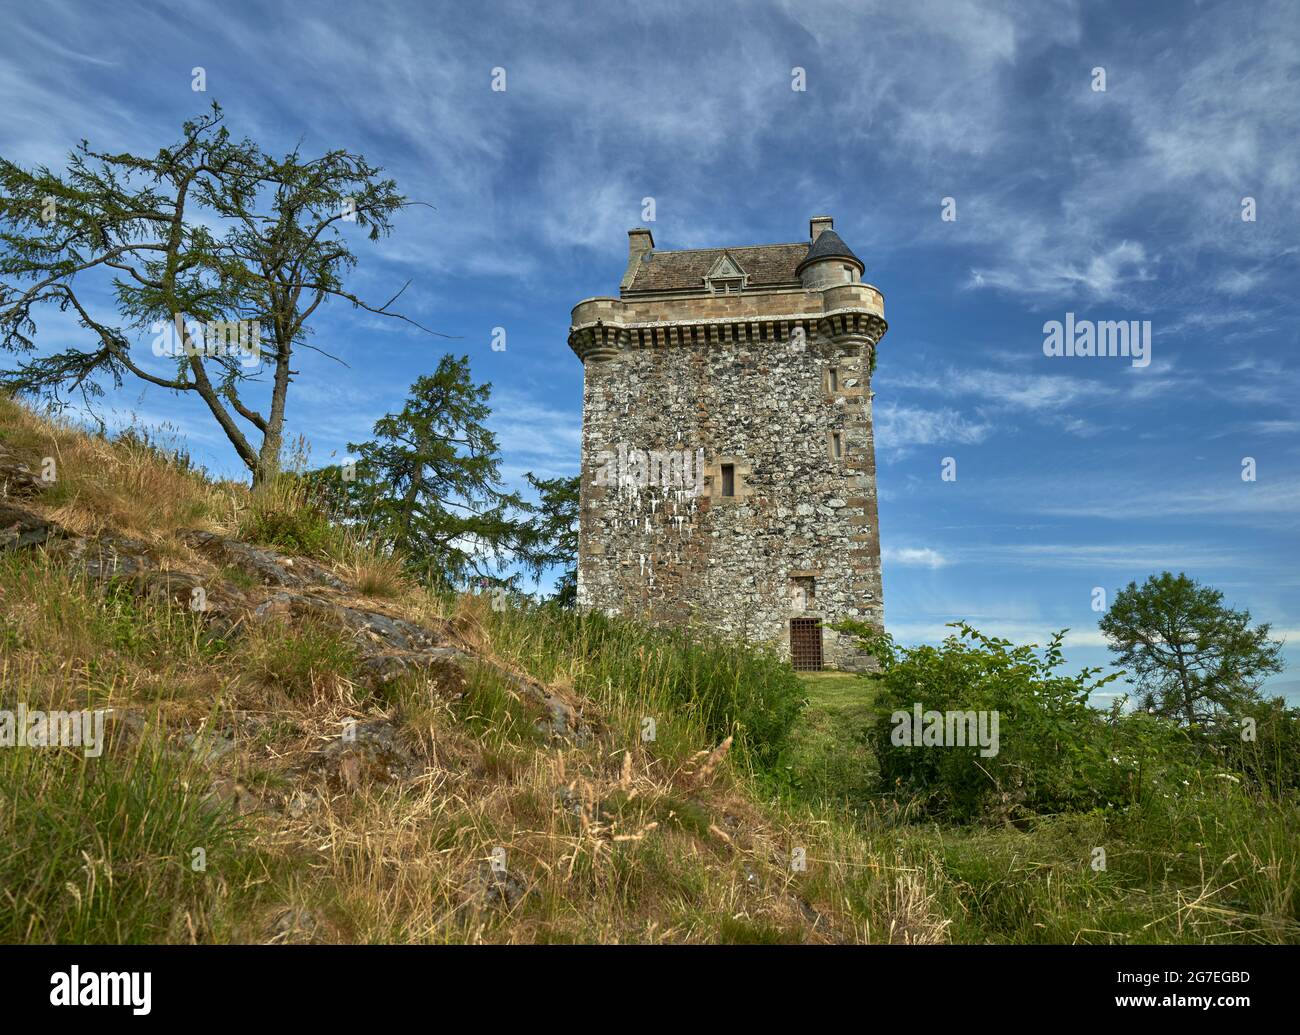 Fatlips Castle, un'icona dei confini scozzesi arroccata sulla cima di Minto Crags che si affaccia su Teviotdale, passando per Denholm e Bedrule, sulla famosa collina di Ruberswaw. Foto Stock